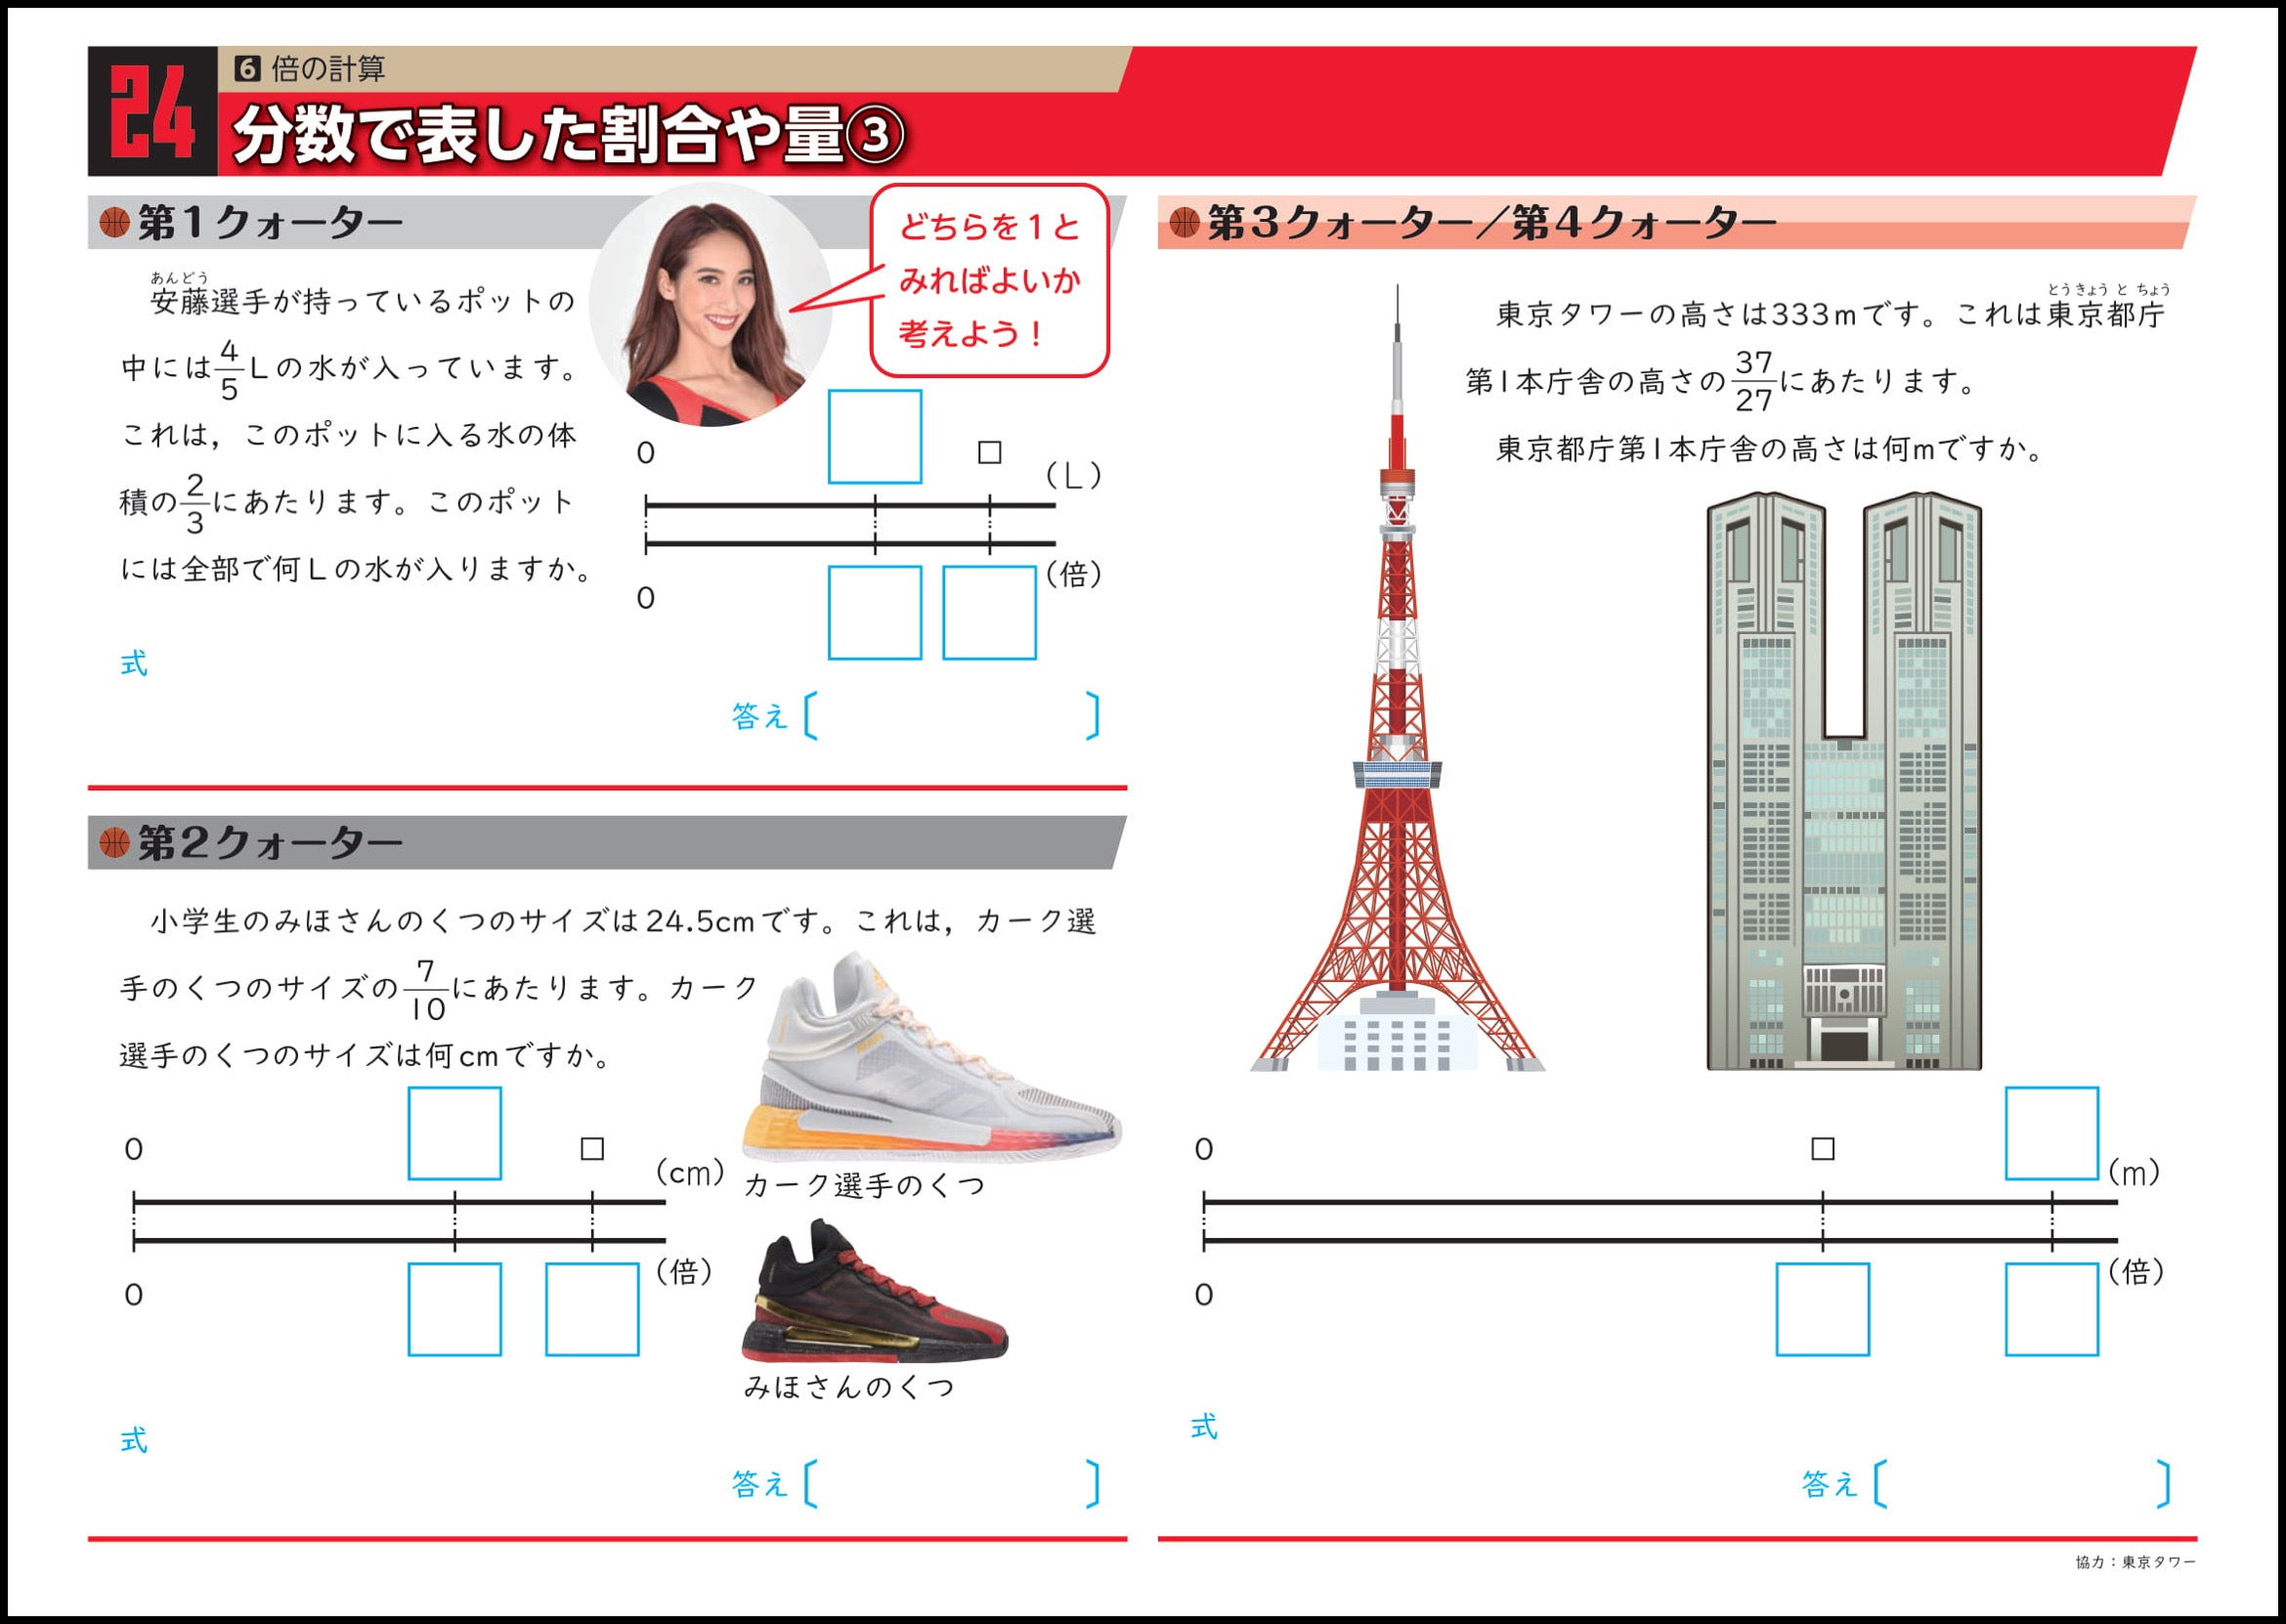 アルバルク東京算数ドリル 21年度版 が完成 東京都内の公立小学校に無償配布 アルバルク東京